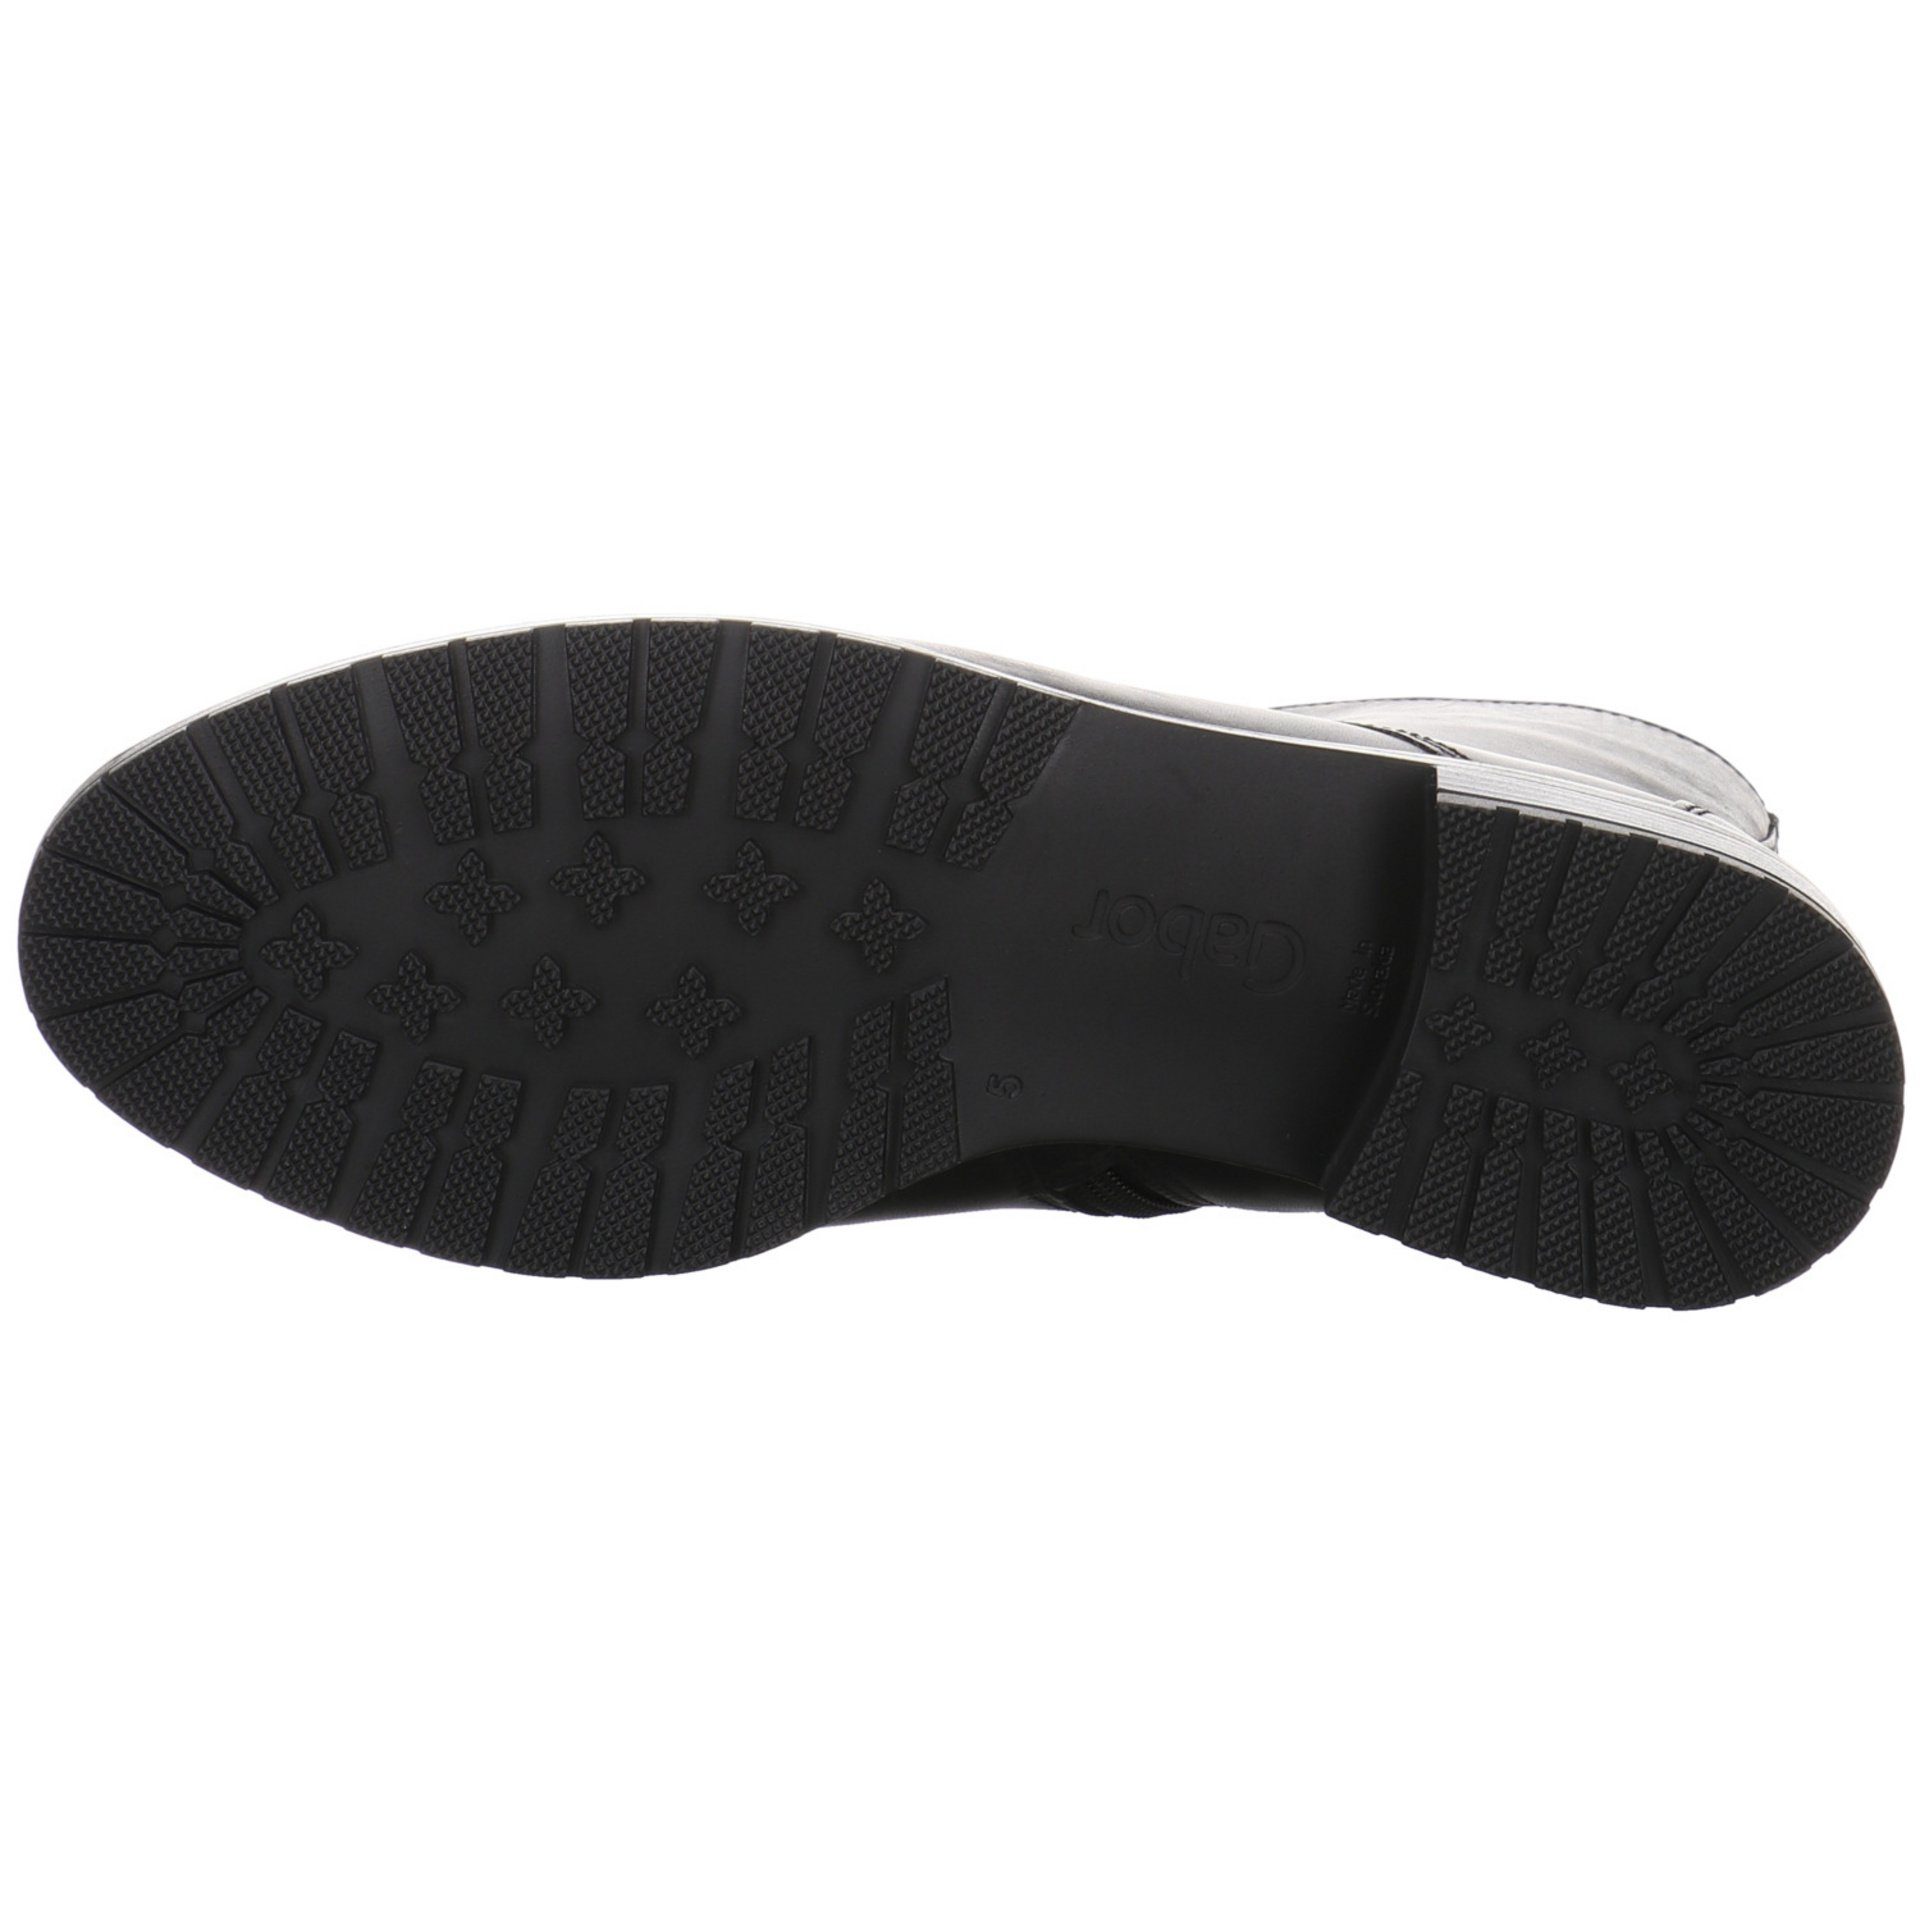 Gabor Damen Stiefeletten Schuhe Schnürstiefelette schwarz Glattleder Schnürstiefelette